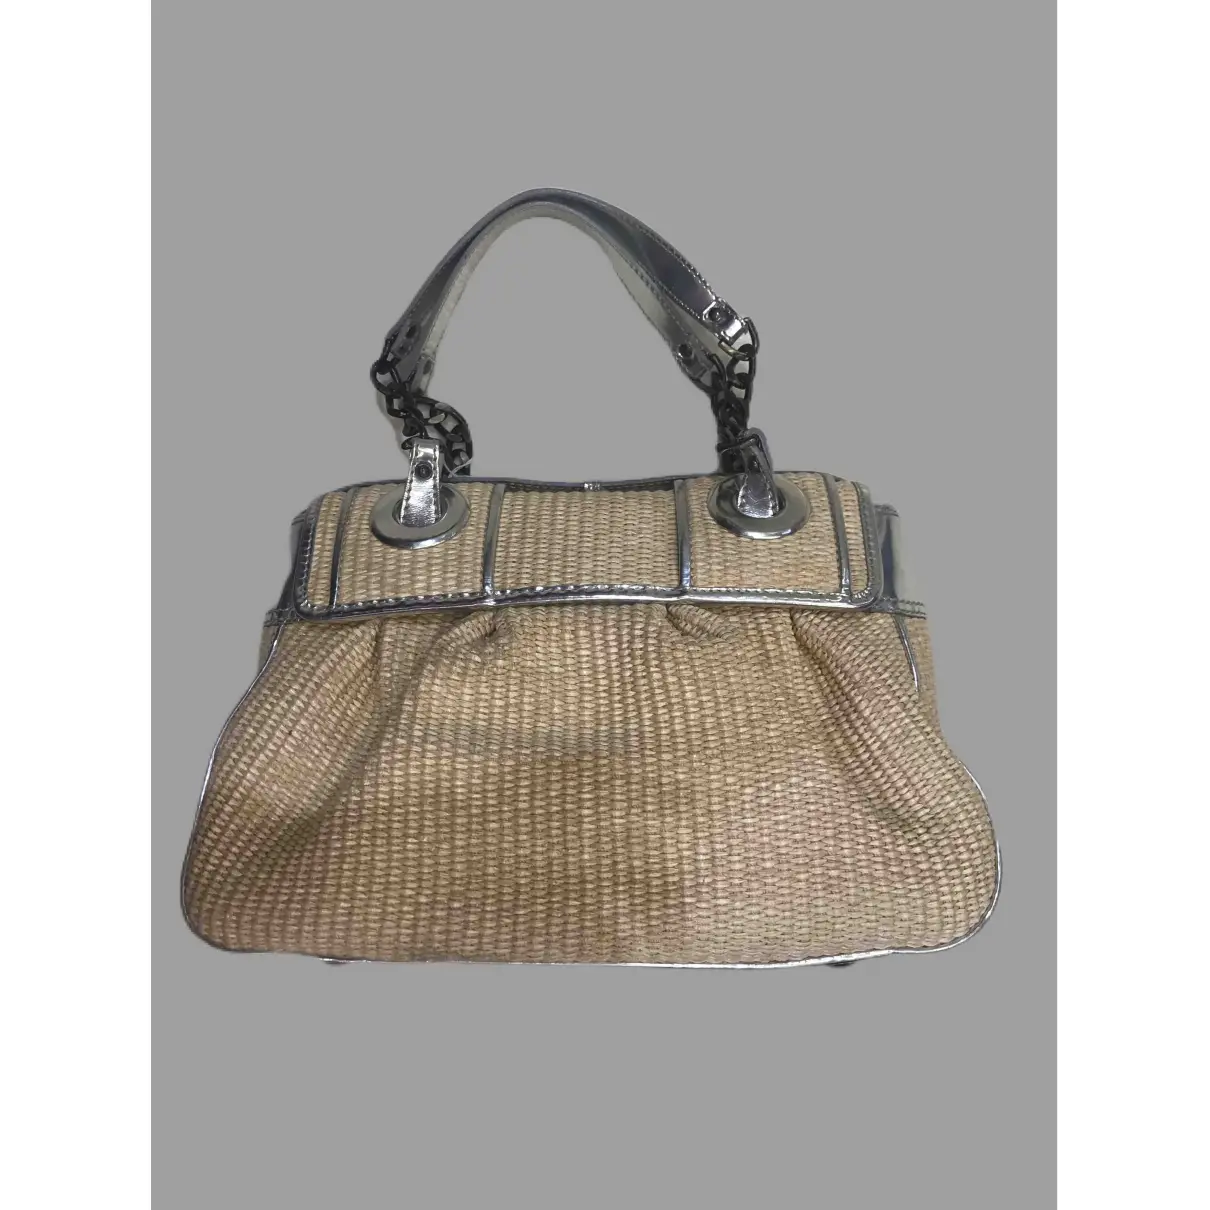 Fendi Bag handbag for sale - Vintage